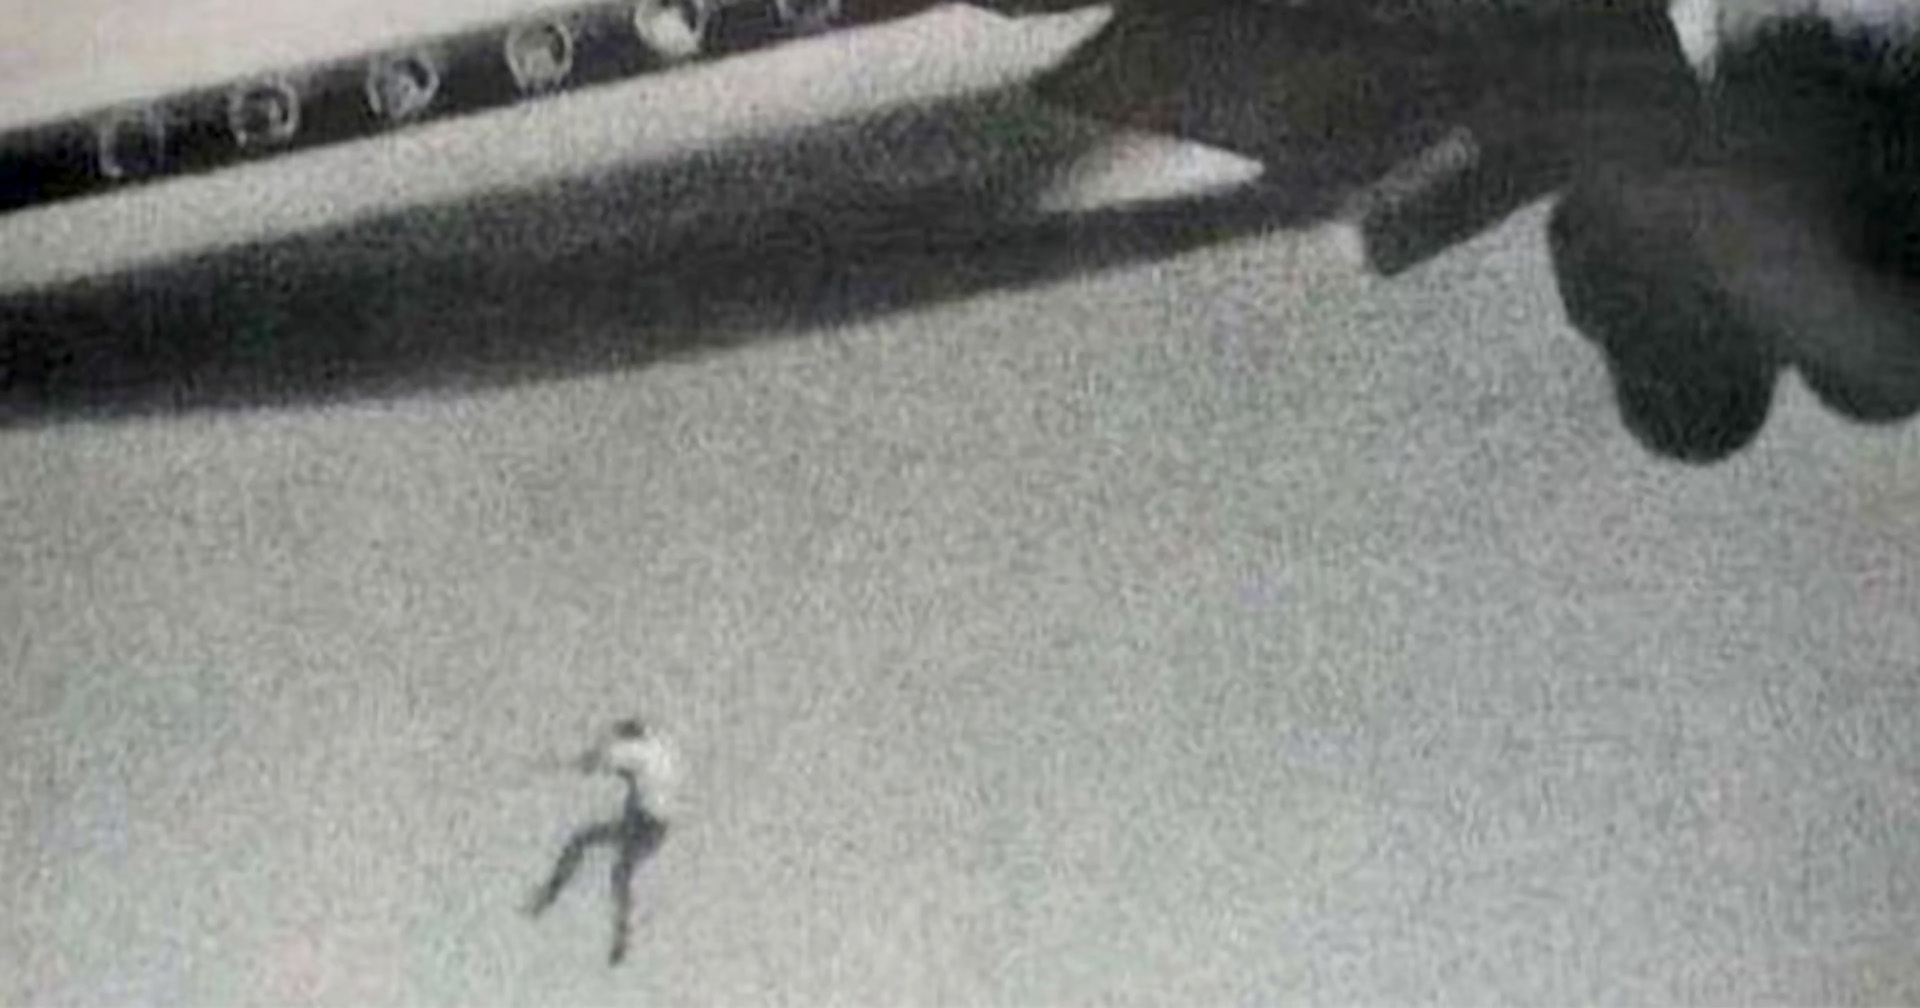 51 ปี ภาพช็อกโลก เด็กชายร่วงจากเครื่องบินขณะบินสูงจากพื้น 60 เมตร